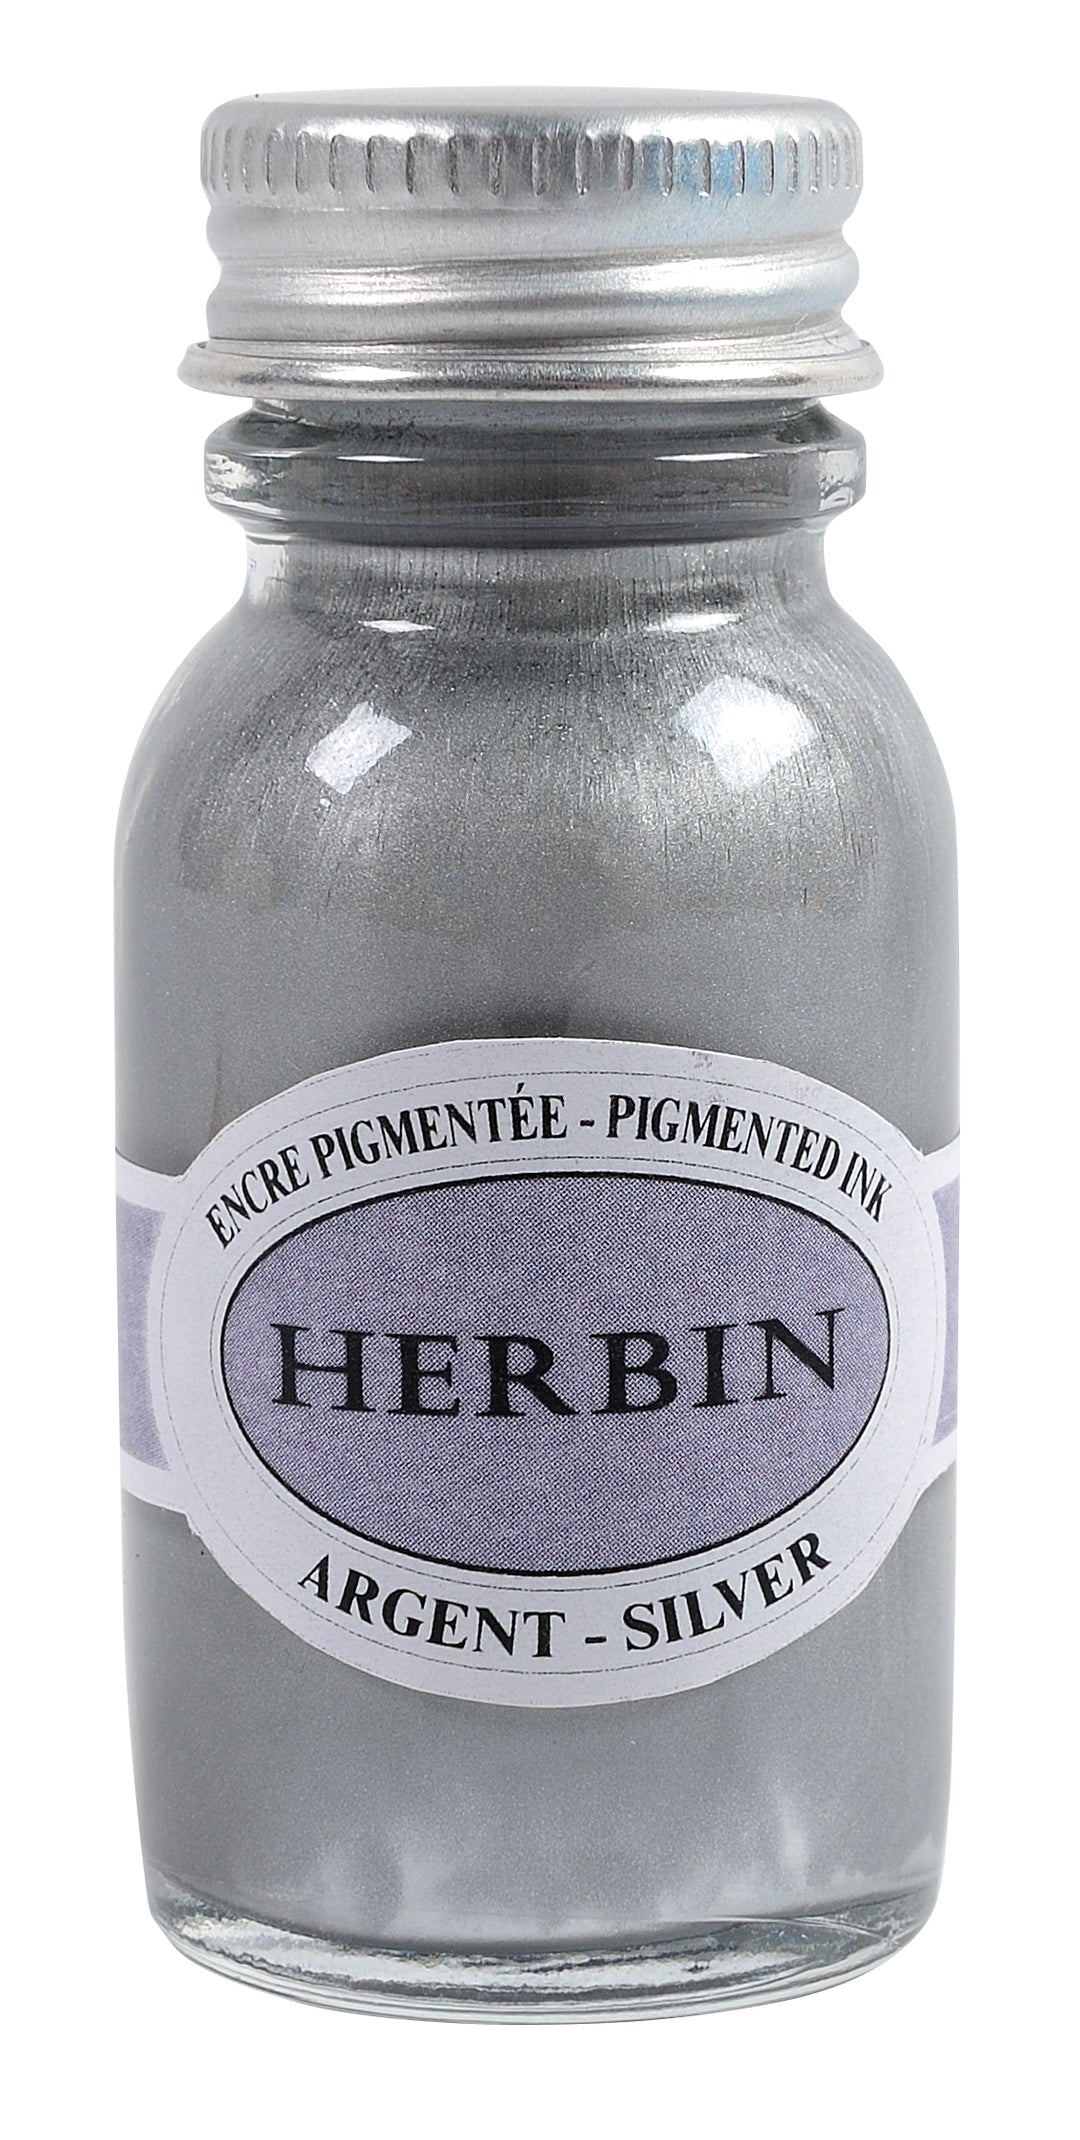 Herbin Pigmented Ink - Argent